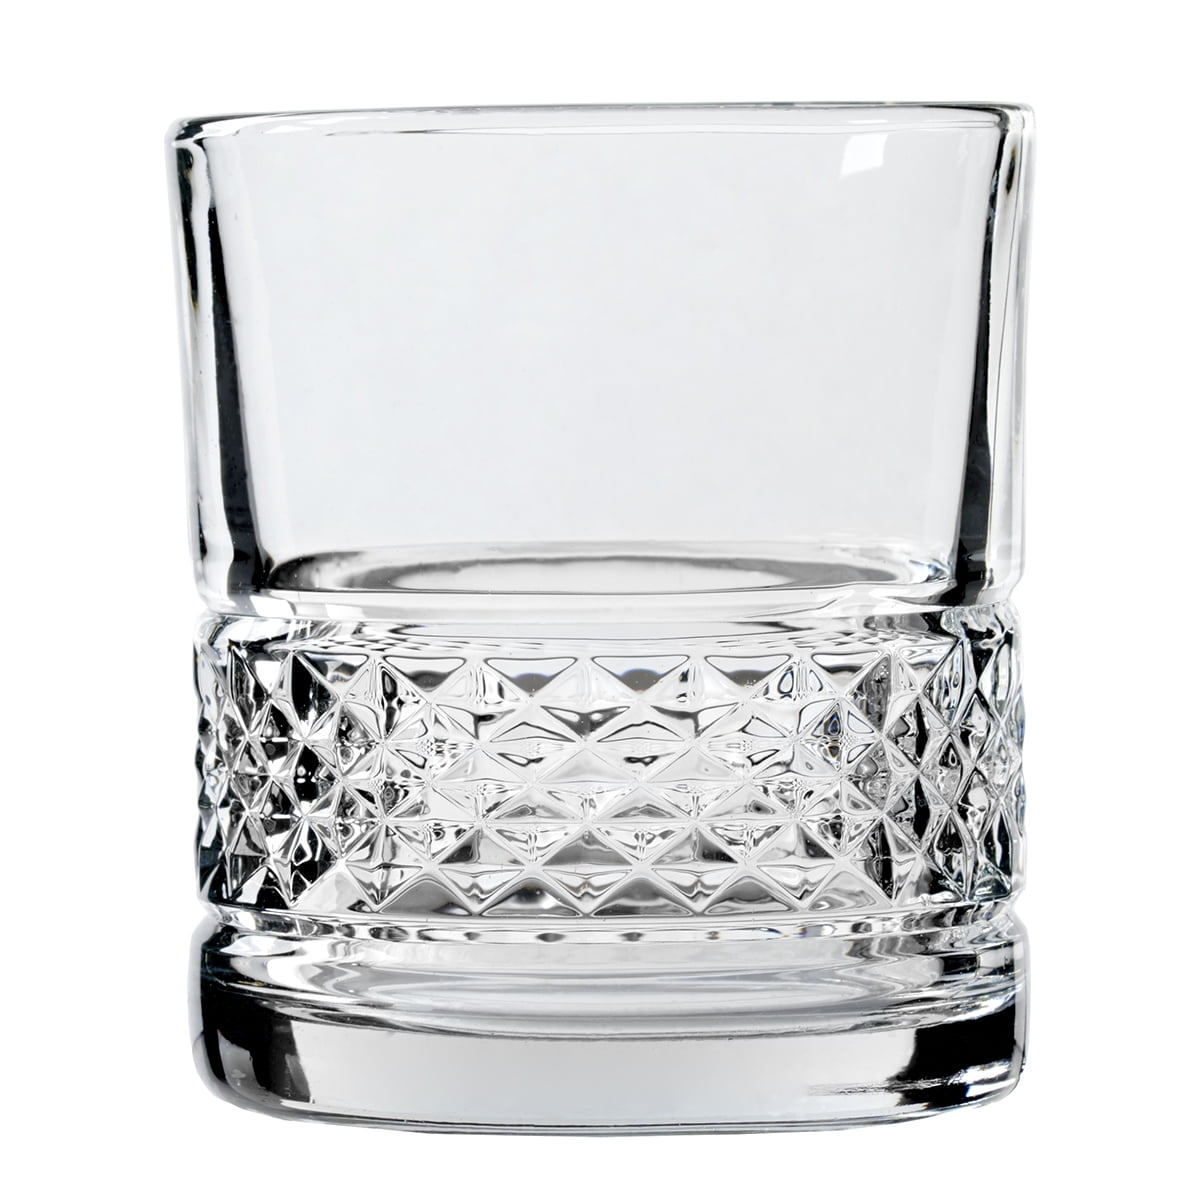 Designer Rocks Glass A Merry Christmas to You 